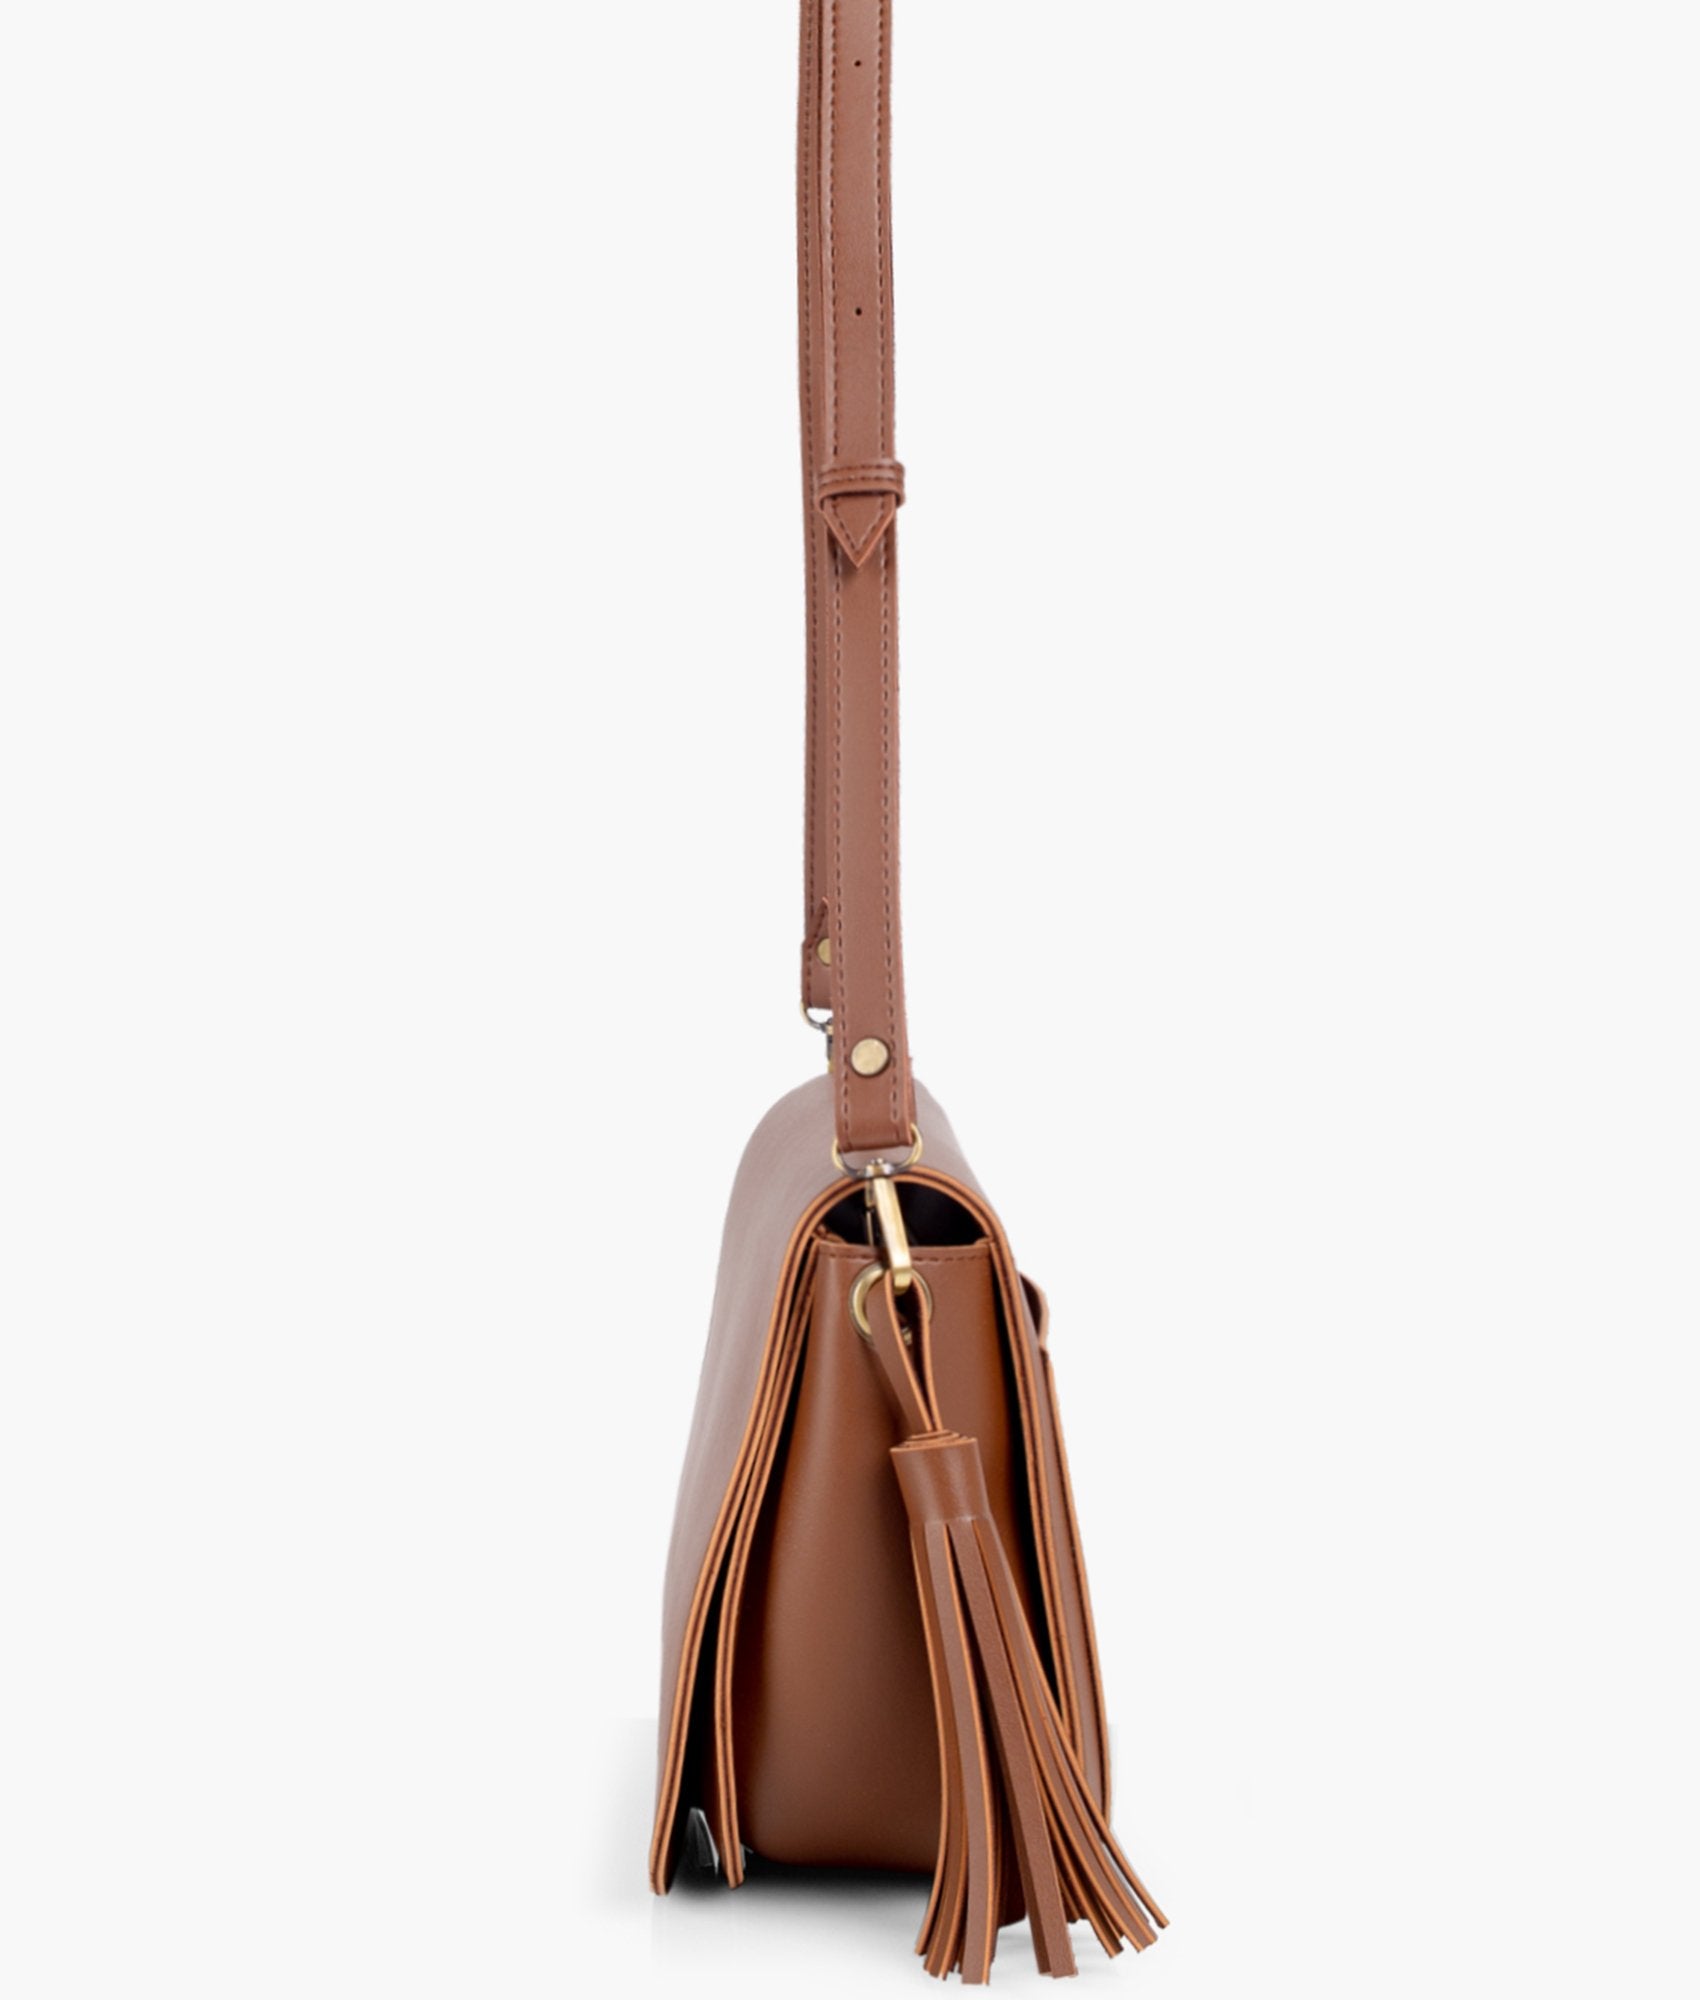 Brown foldover saddle bag